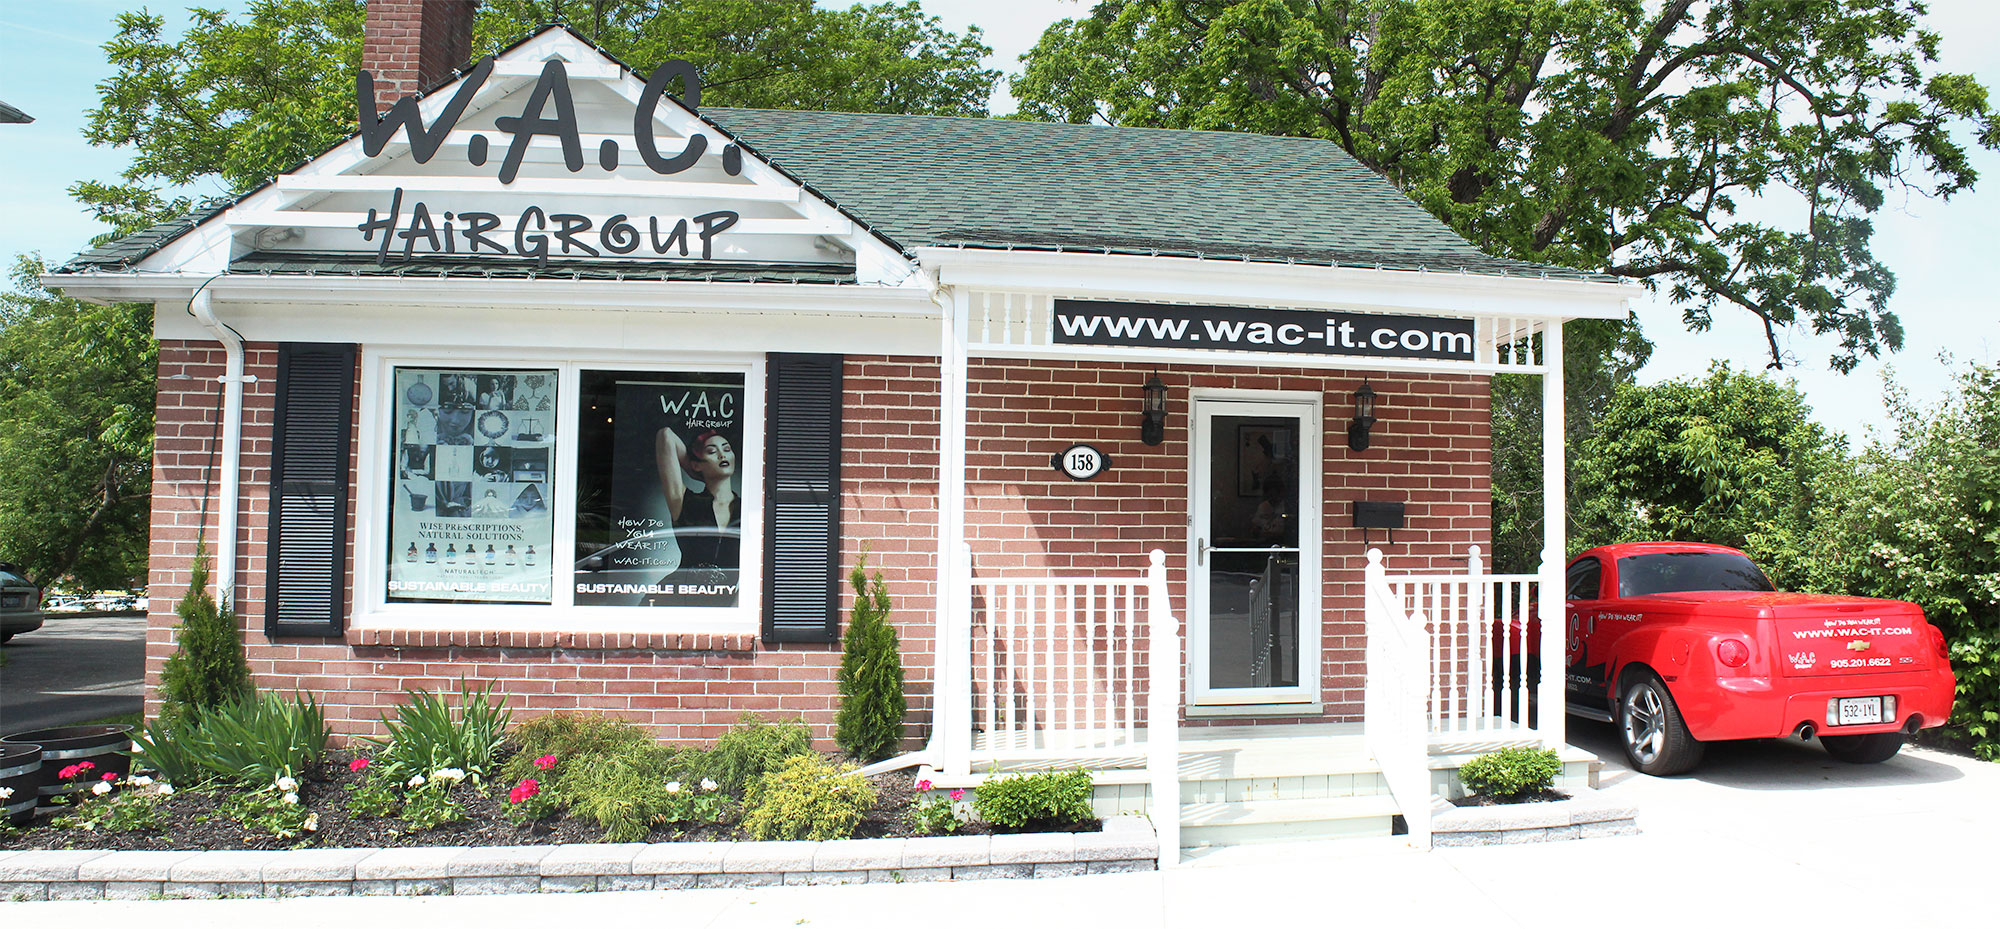 W.A.C Hair Group